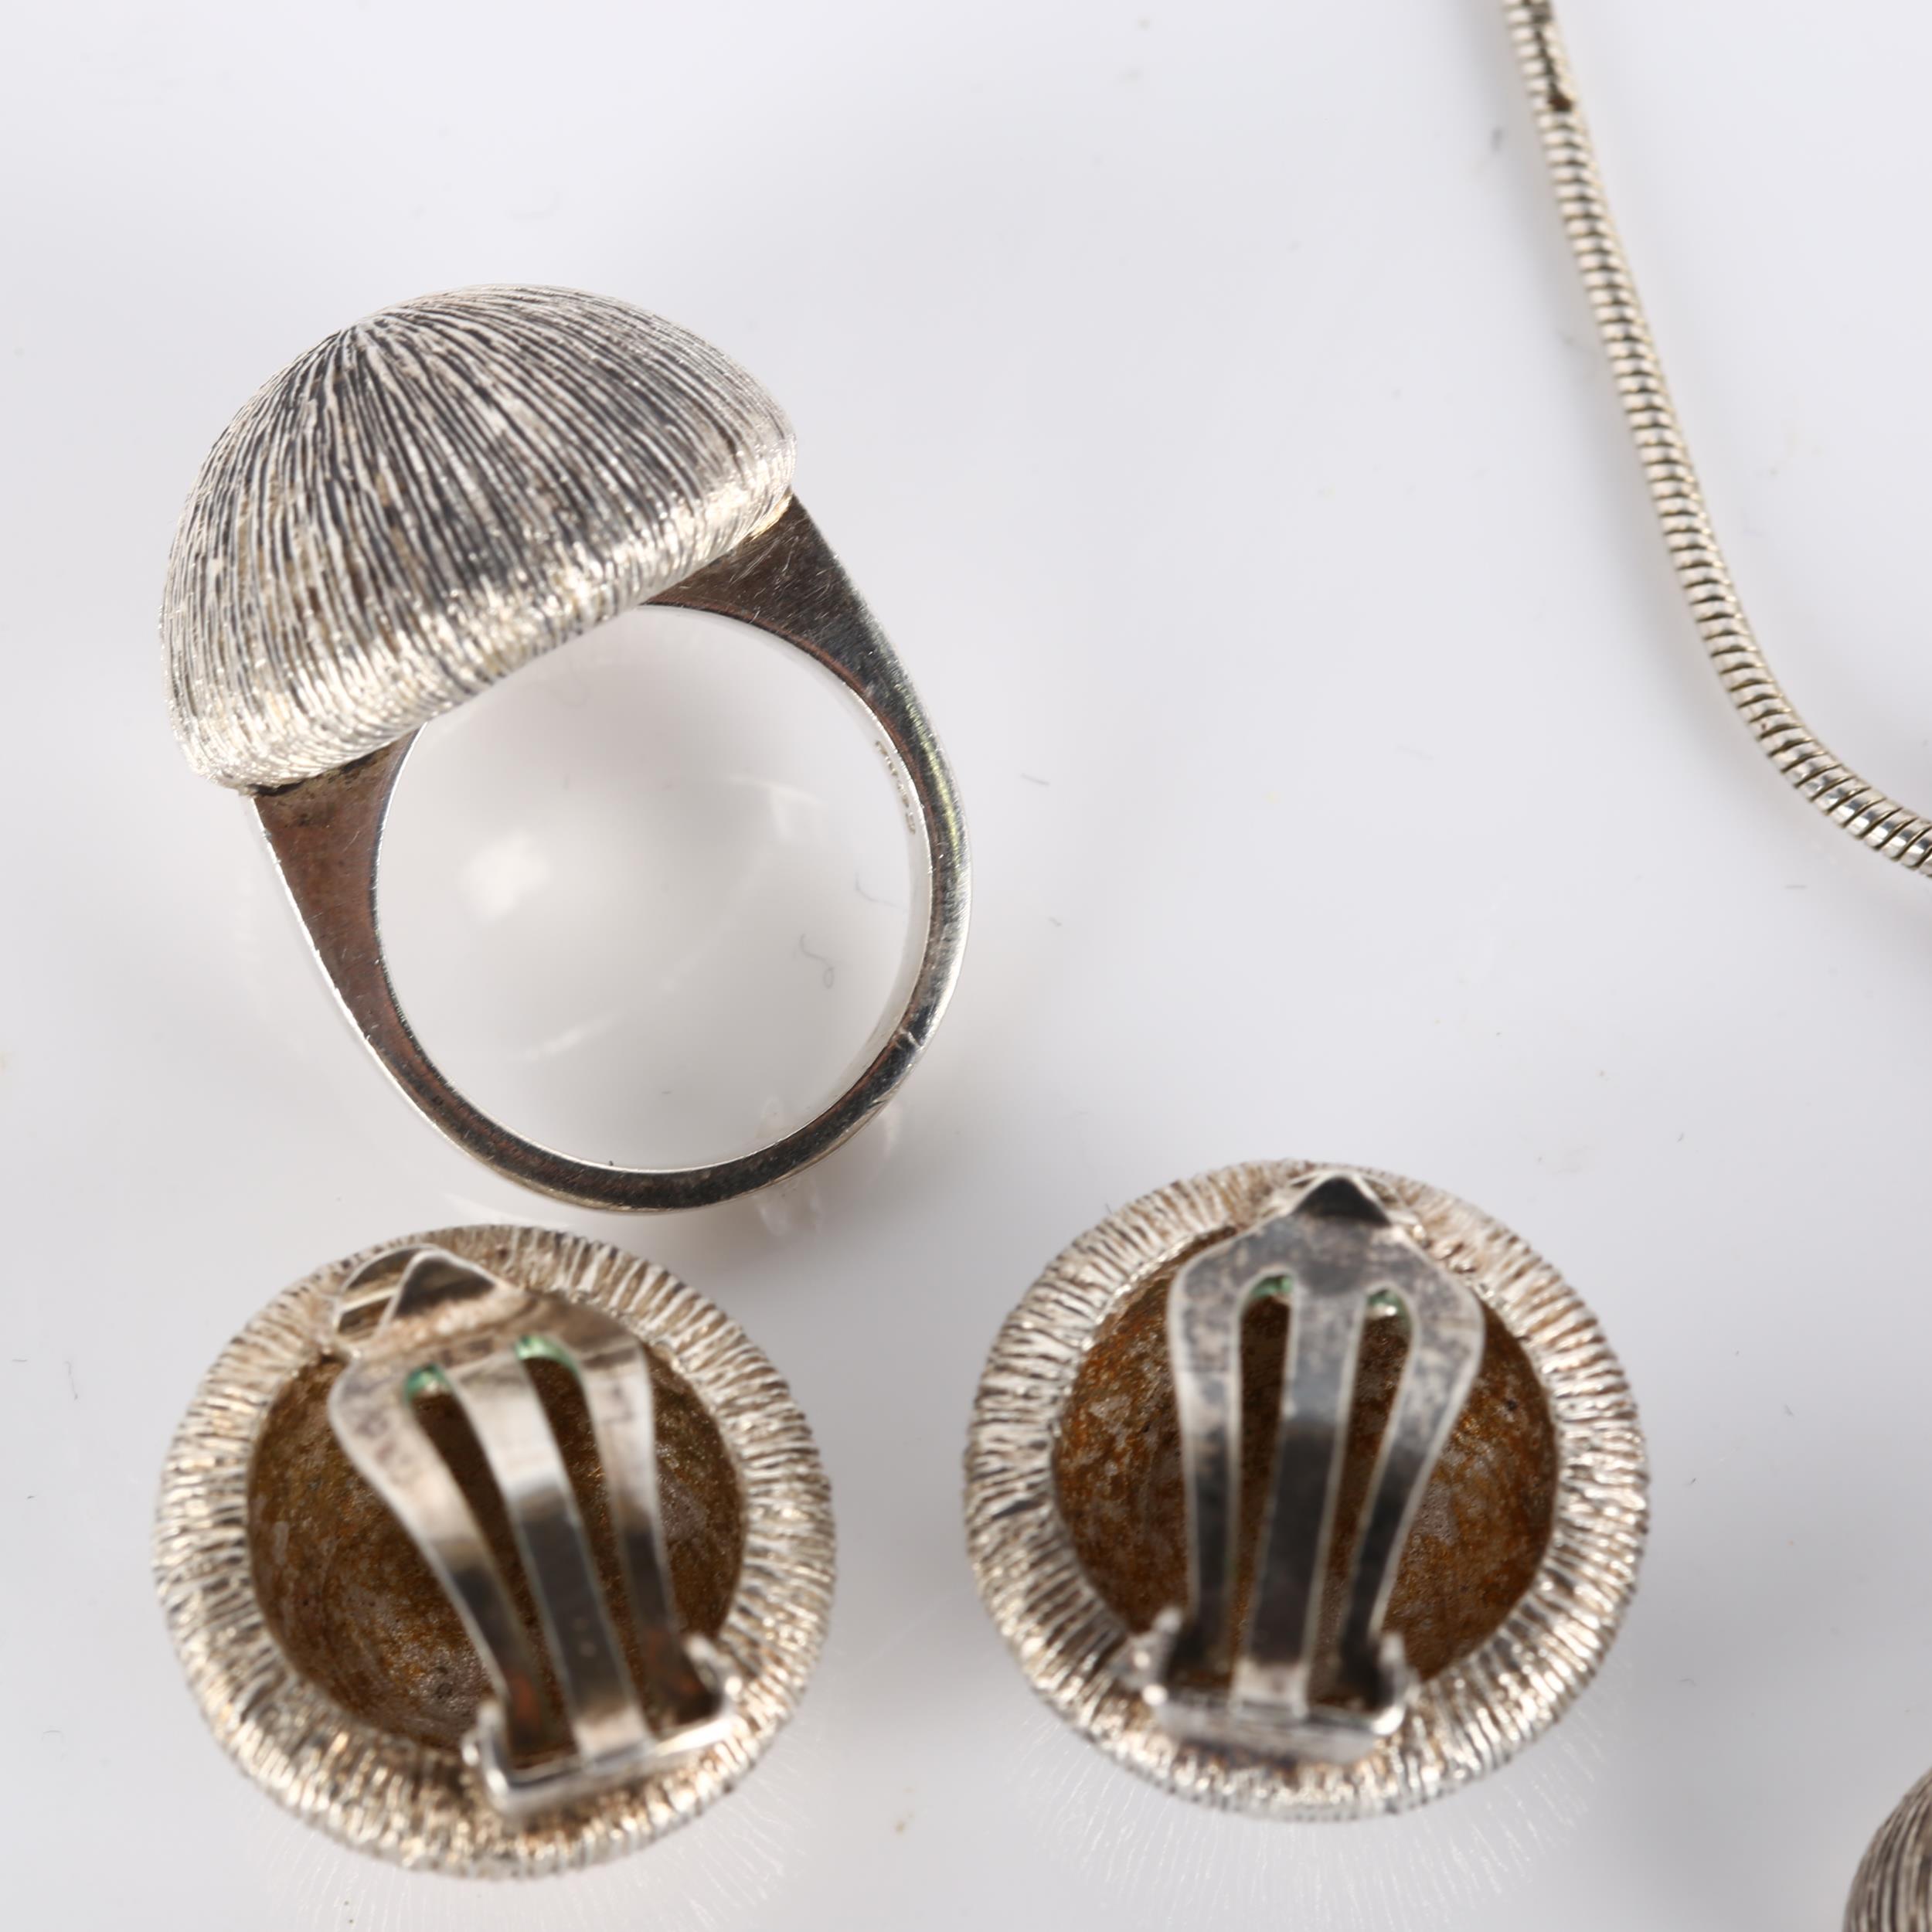 KLAUS GEORG MELCHER - a Danish modernist sterling silver demi-parure, comprising onion pendant - Bild 2 aus 4